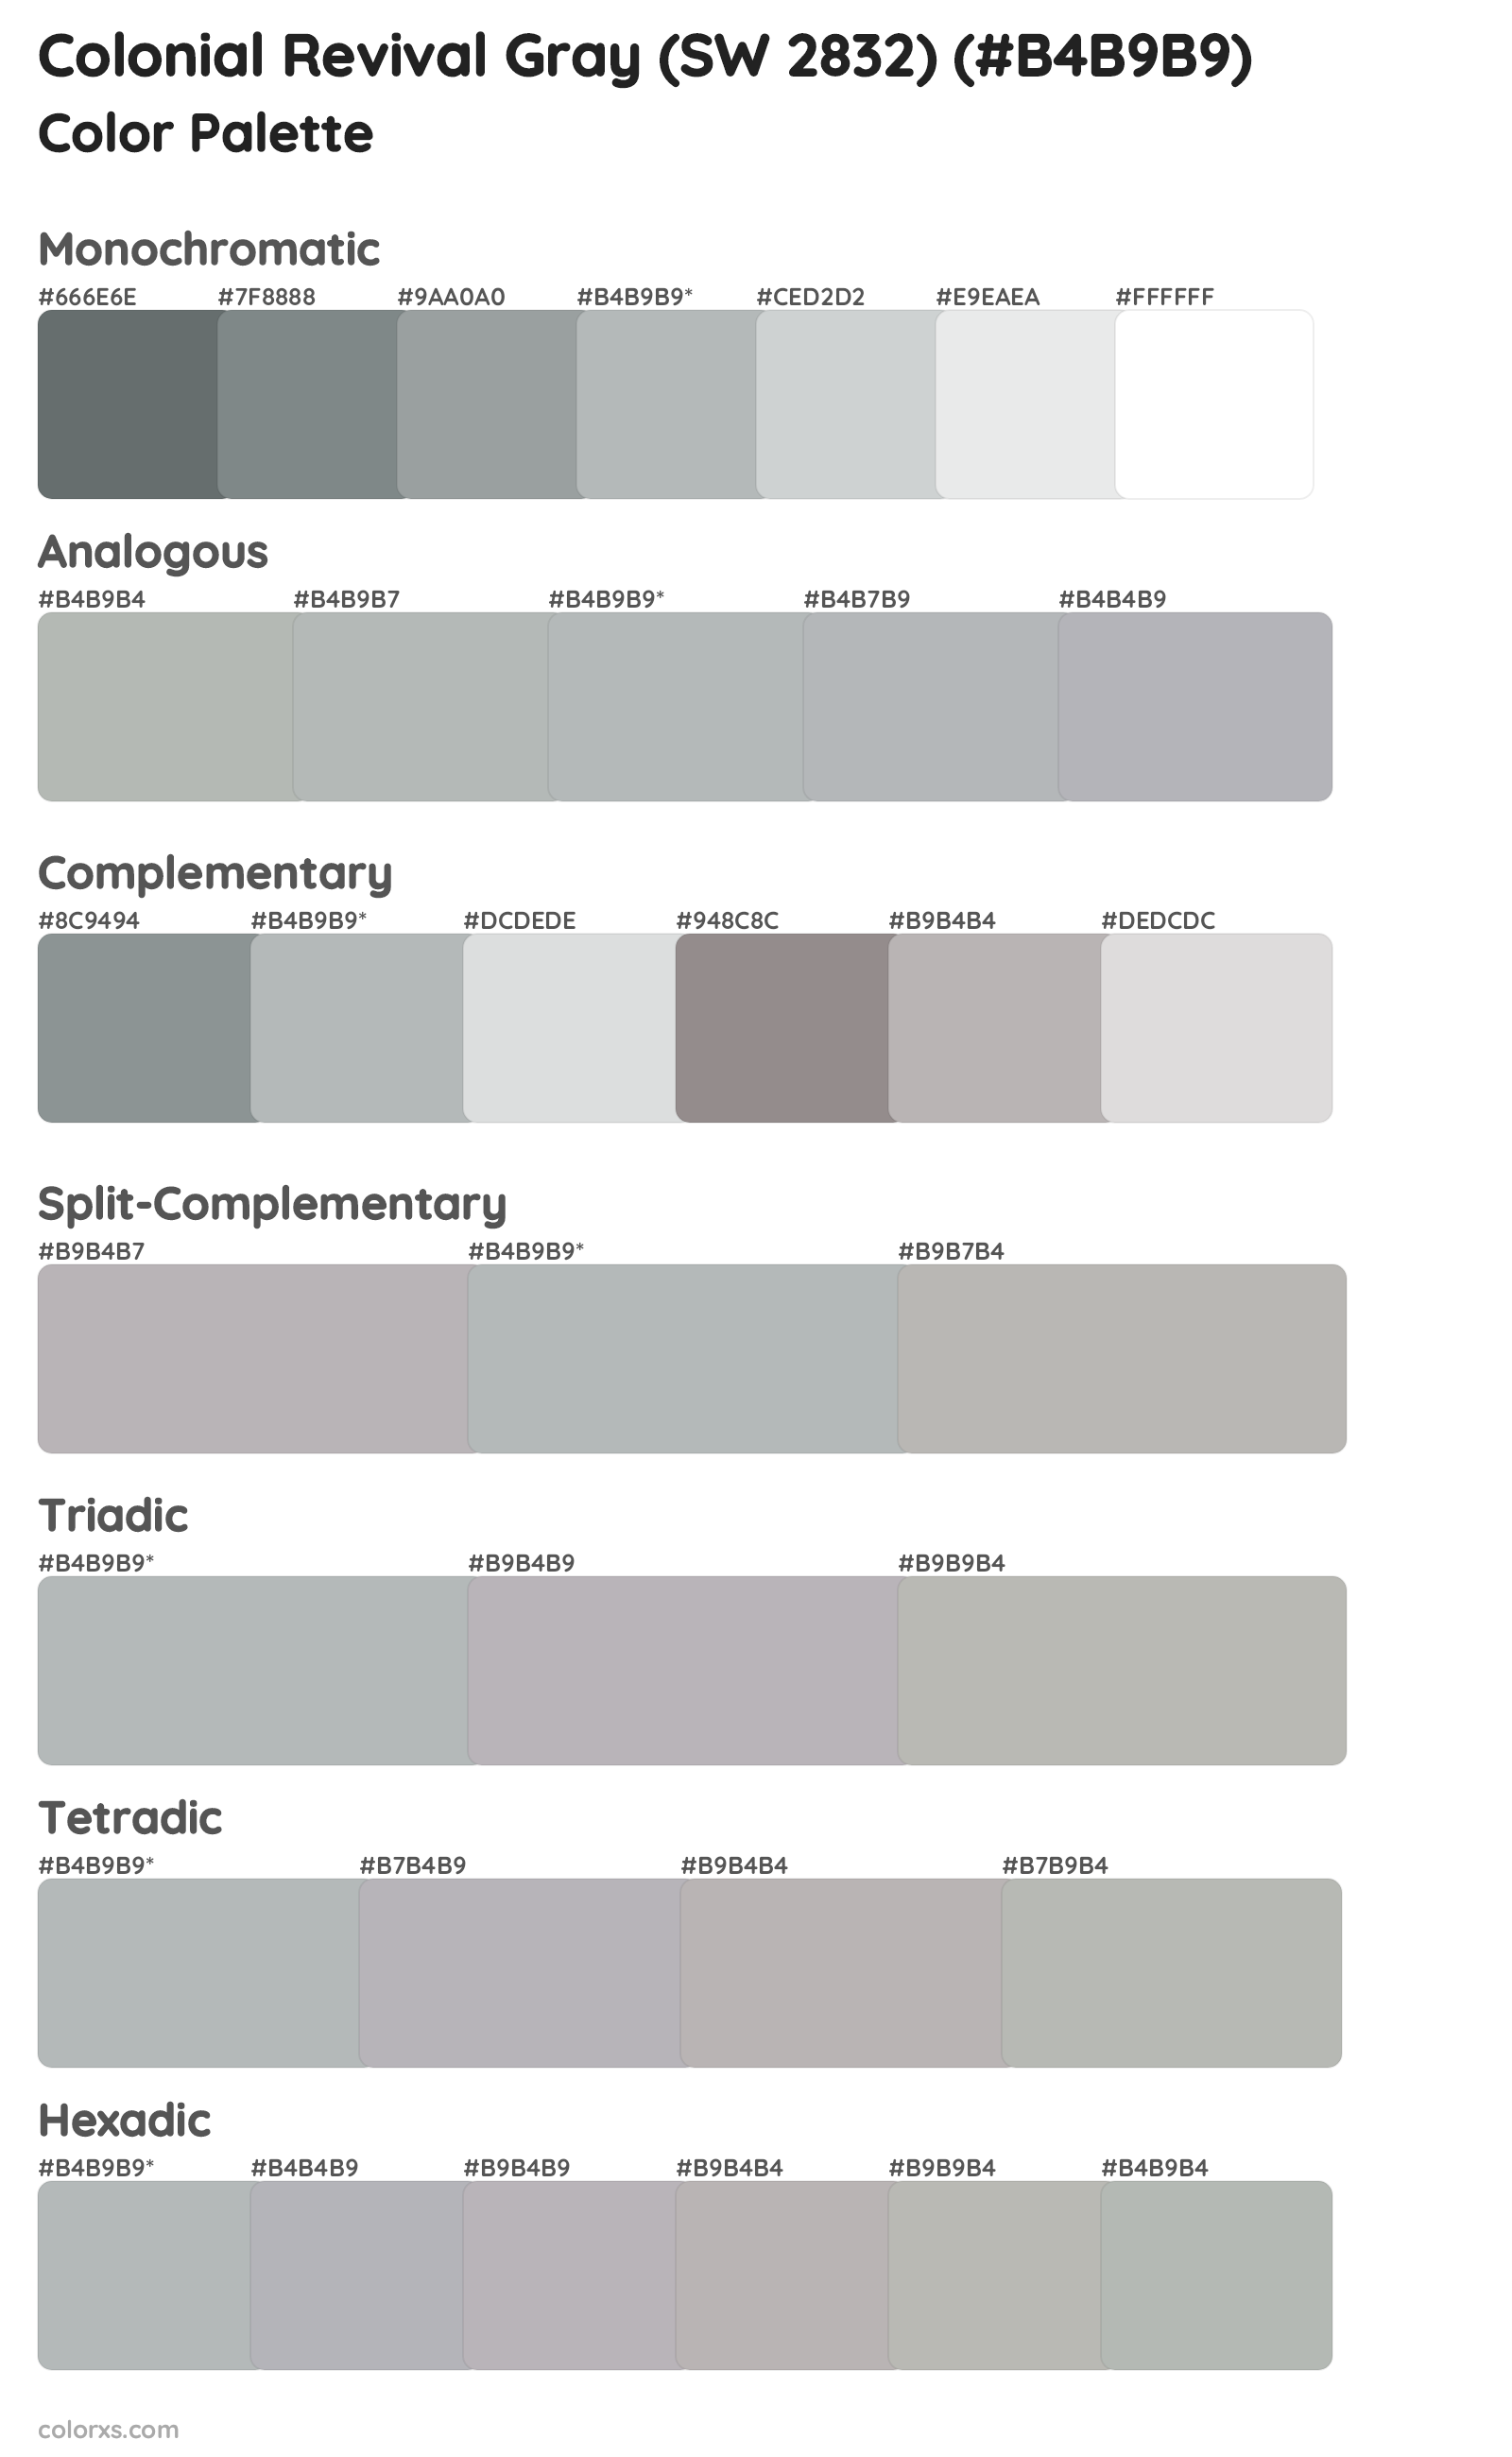 Colonial Revival Gray (SW 2832) Color Scheme Palettes